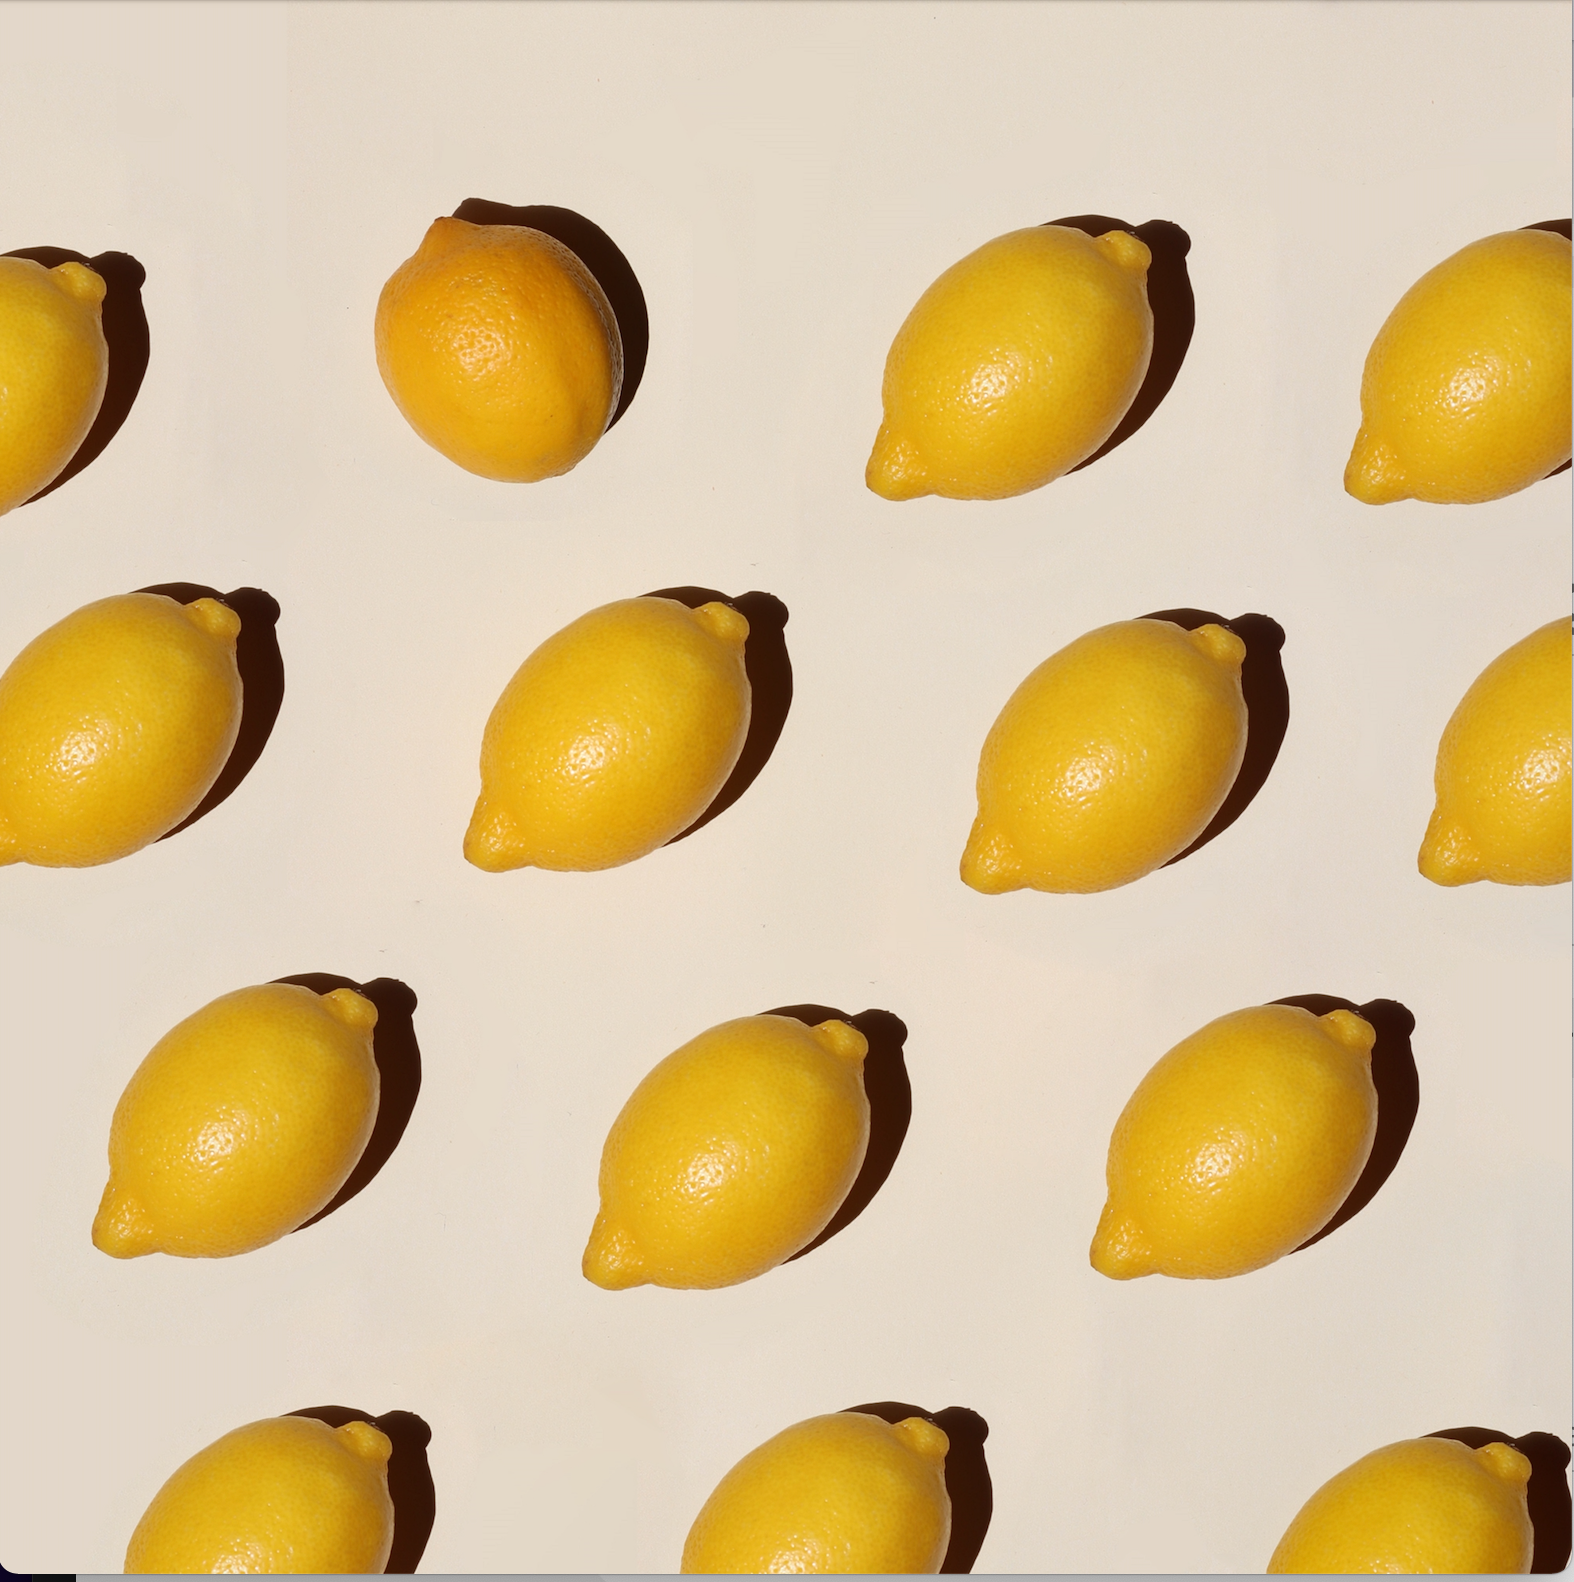 Zitronen liegend gleichmäßig nebeneinander angeordnet